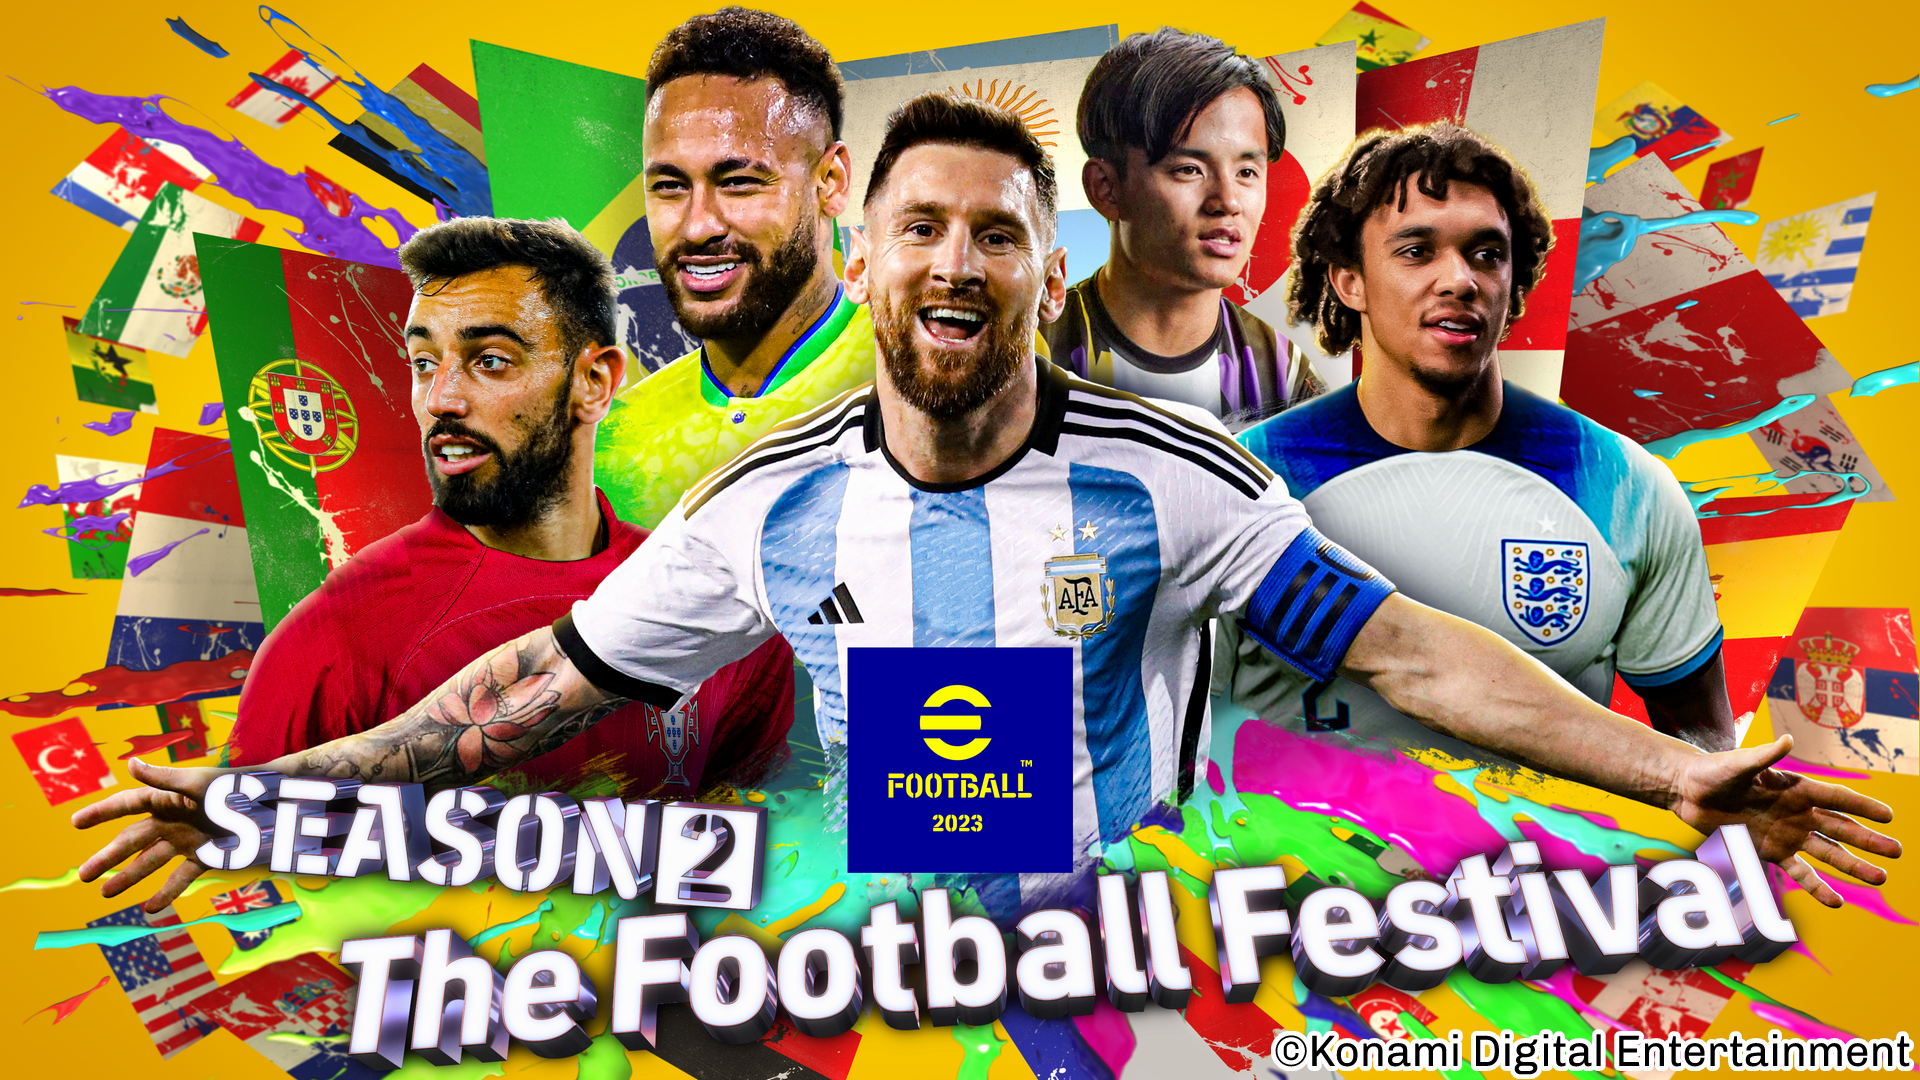 世界中が熱くなる The Football Festival Efootball 23 で開催 株式会社コナミデジタルエンタテインメントのプレスリリース